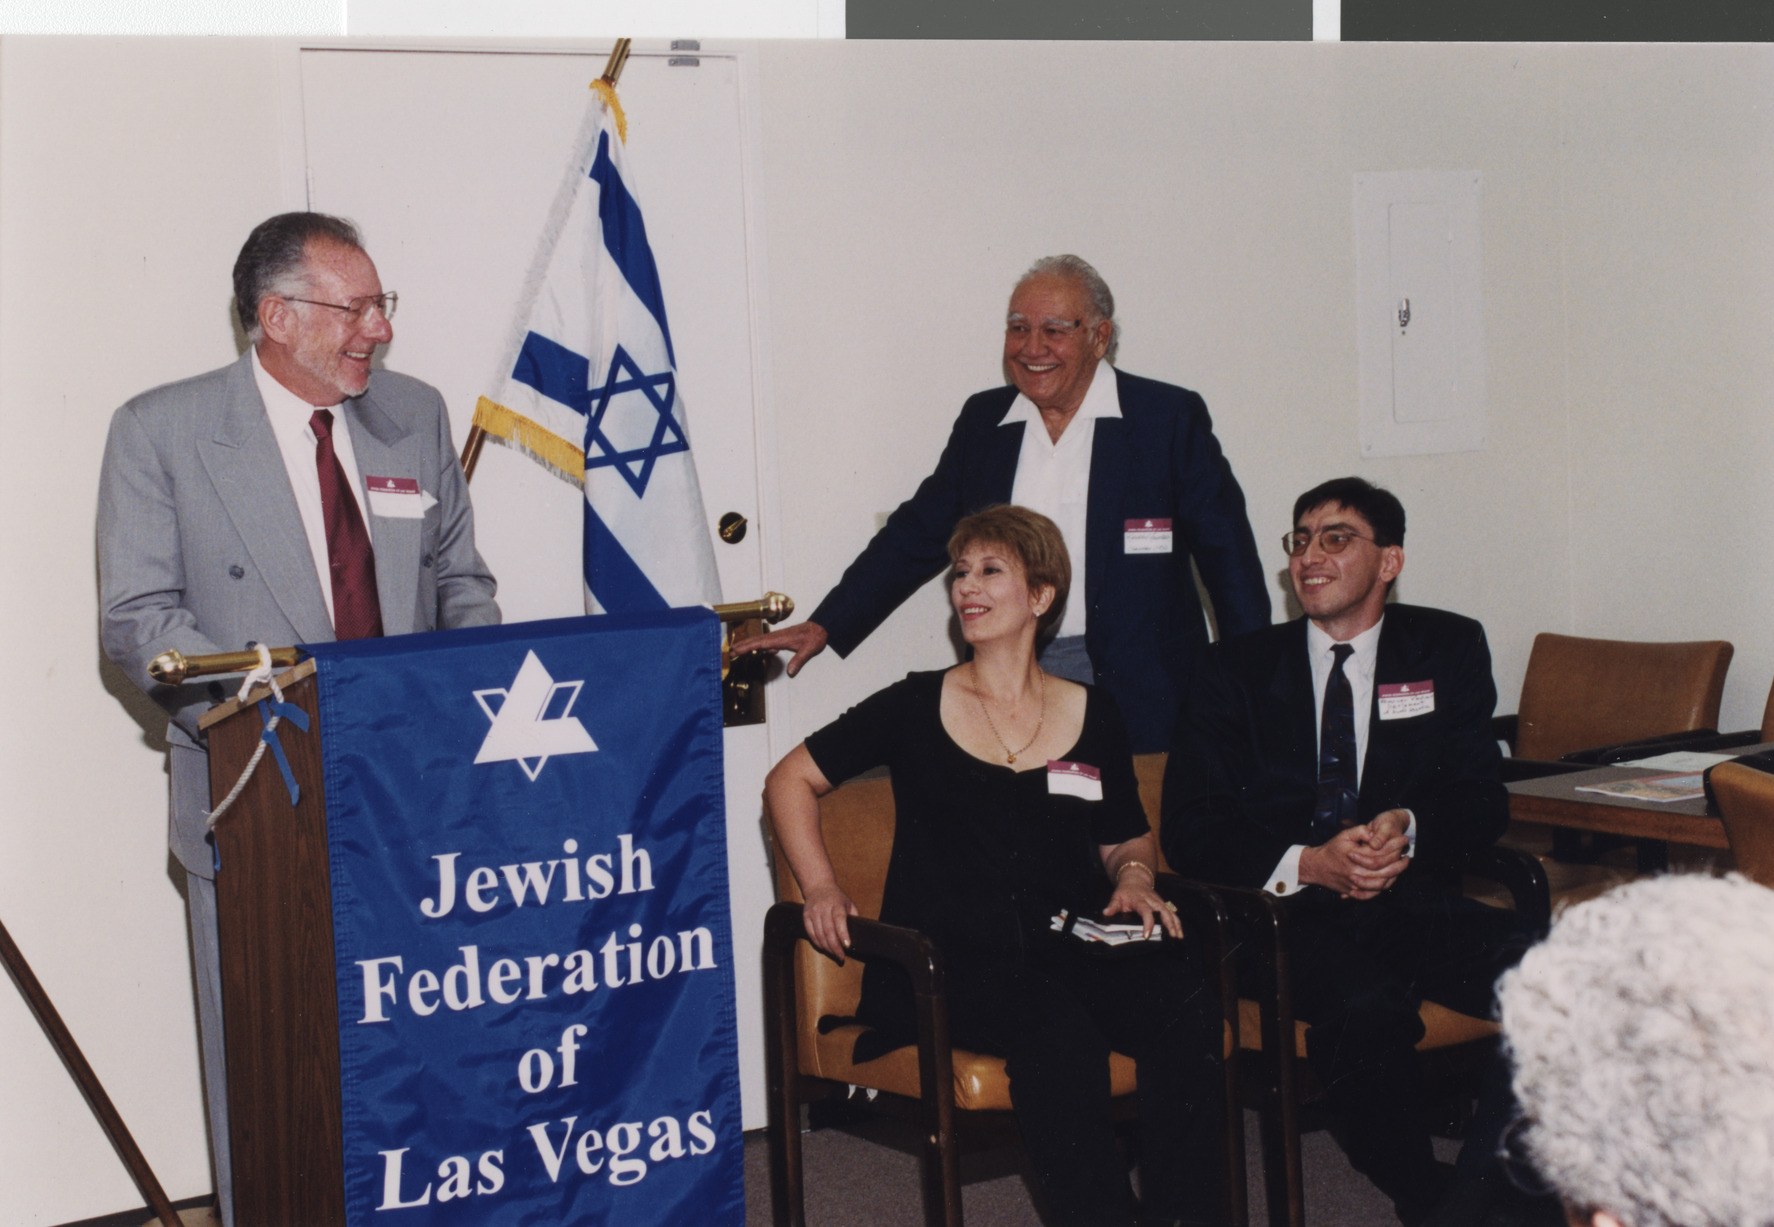 Photograph of Oscar Goodman at the podium, 1999